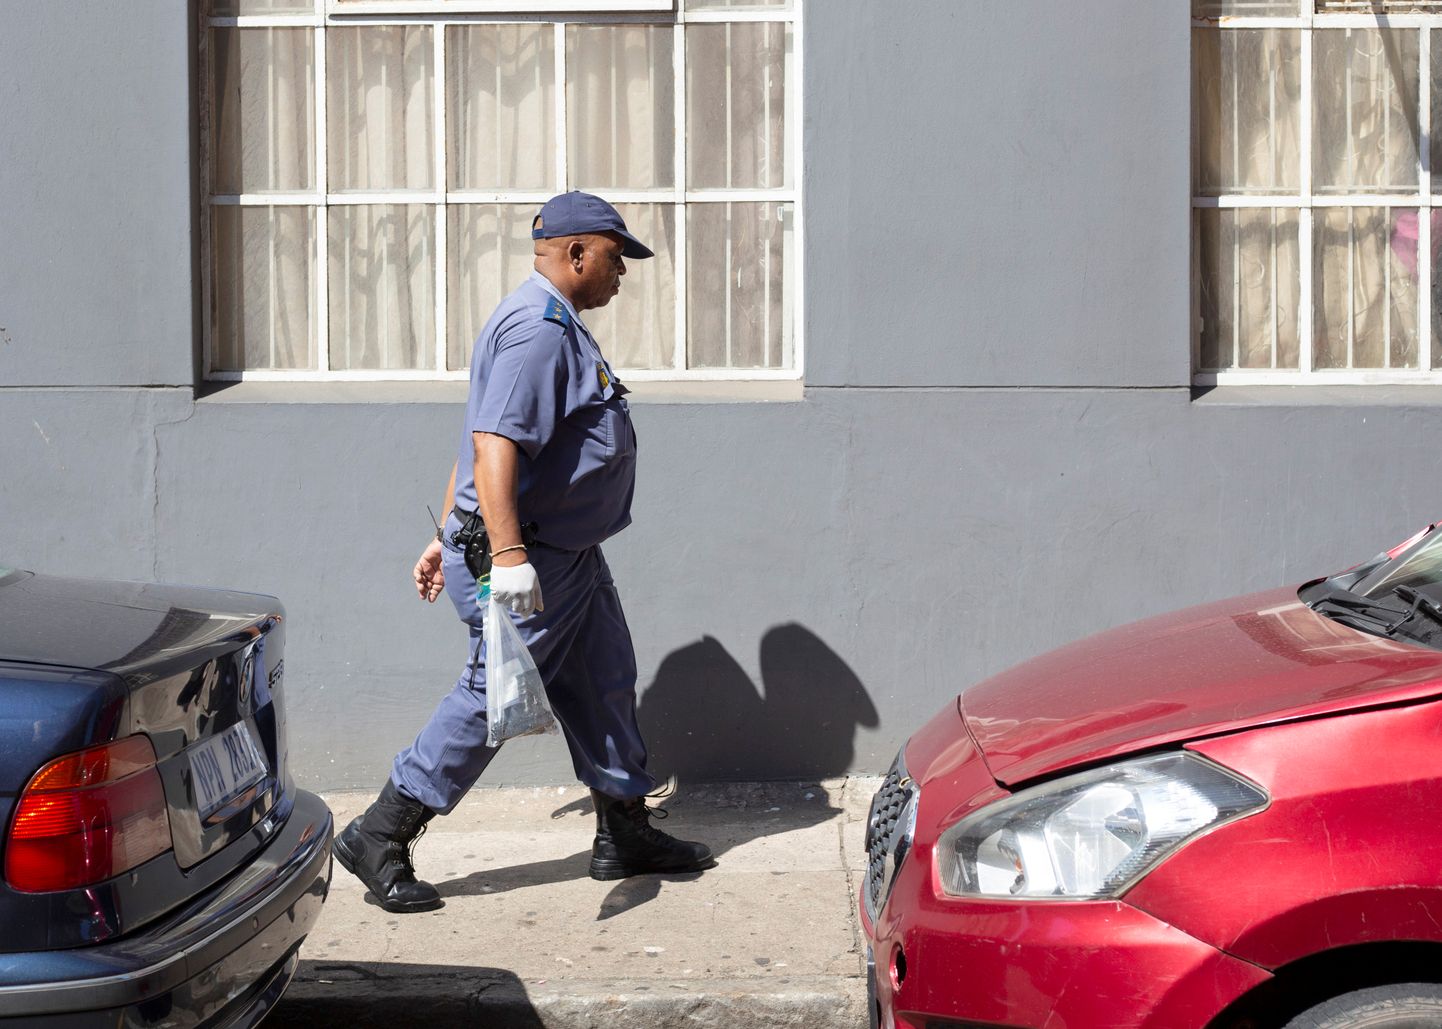 Lõuna-Aafrika politseinik tõendikotiga.